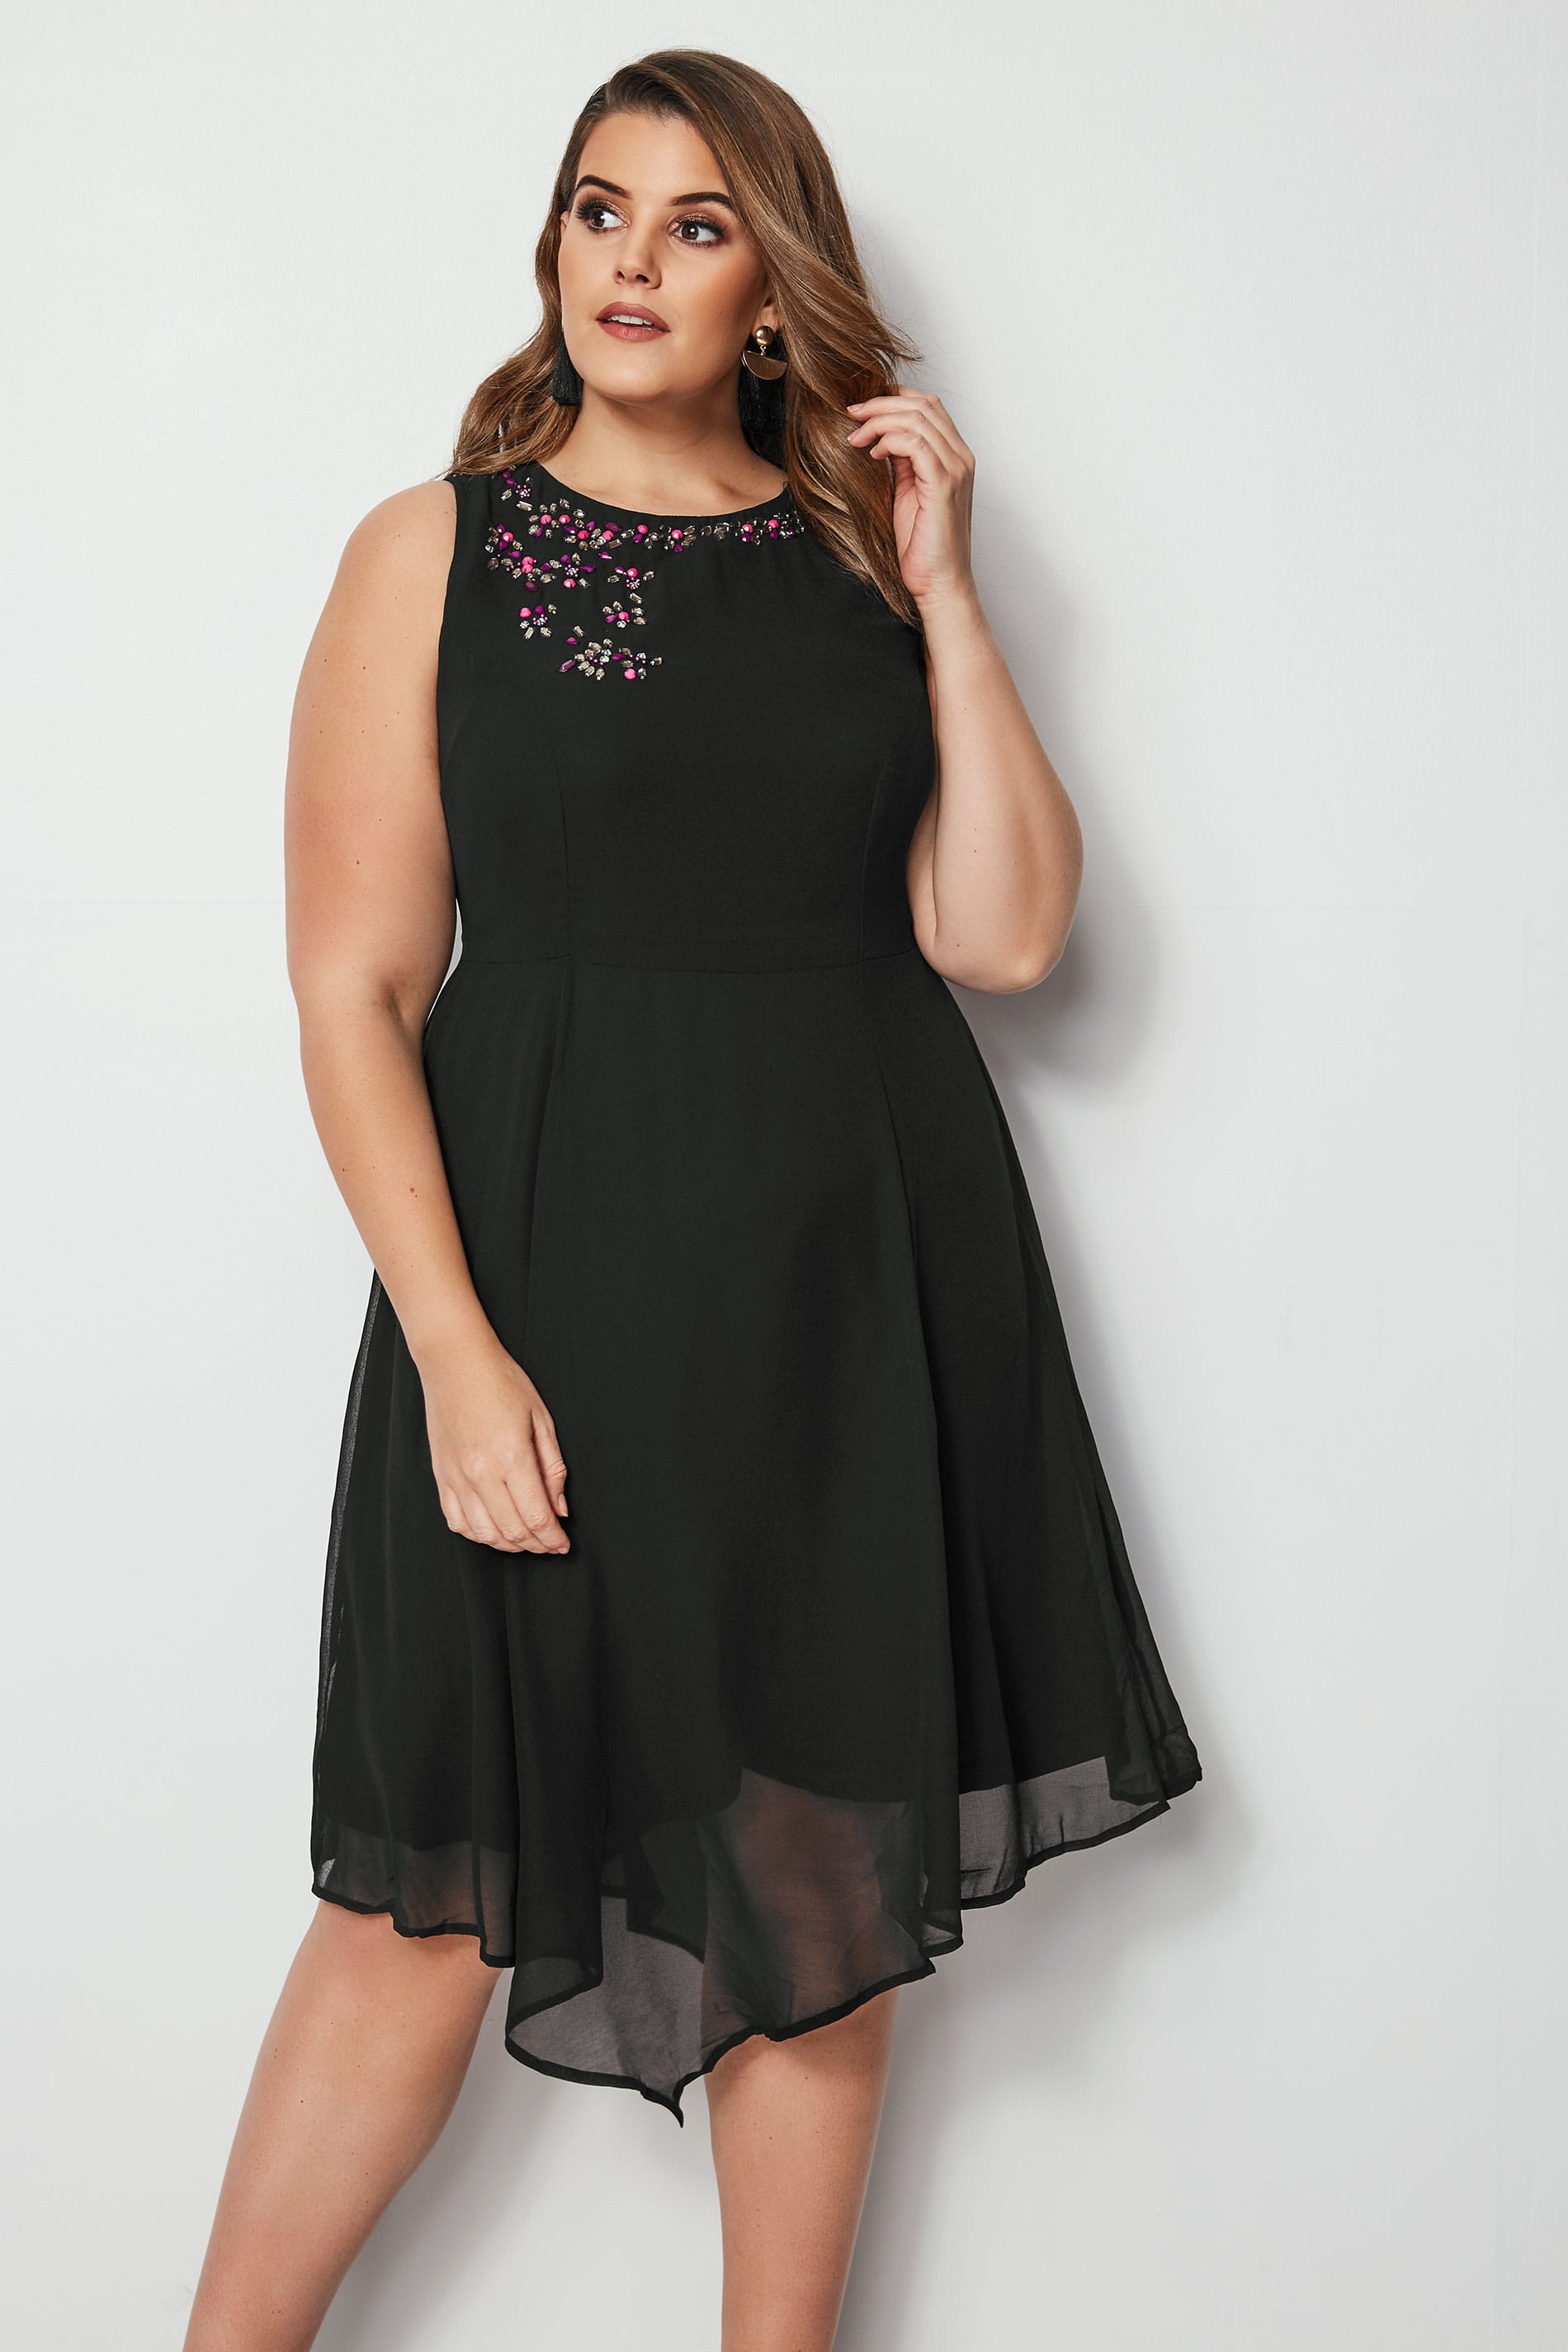 Black Embellished Fit & Flare Skater Dress, Plus size 16 to 36